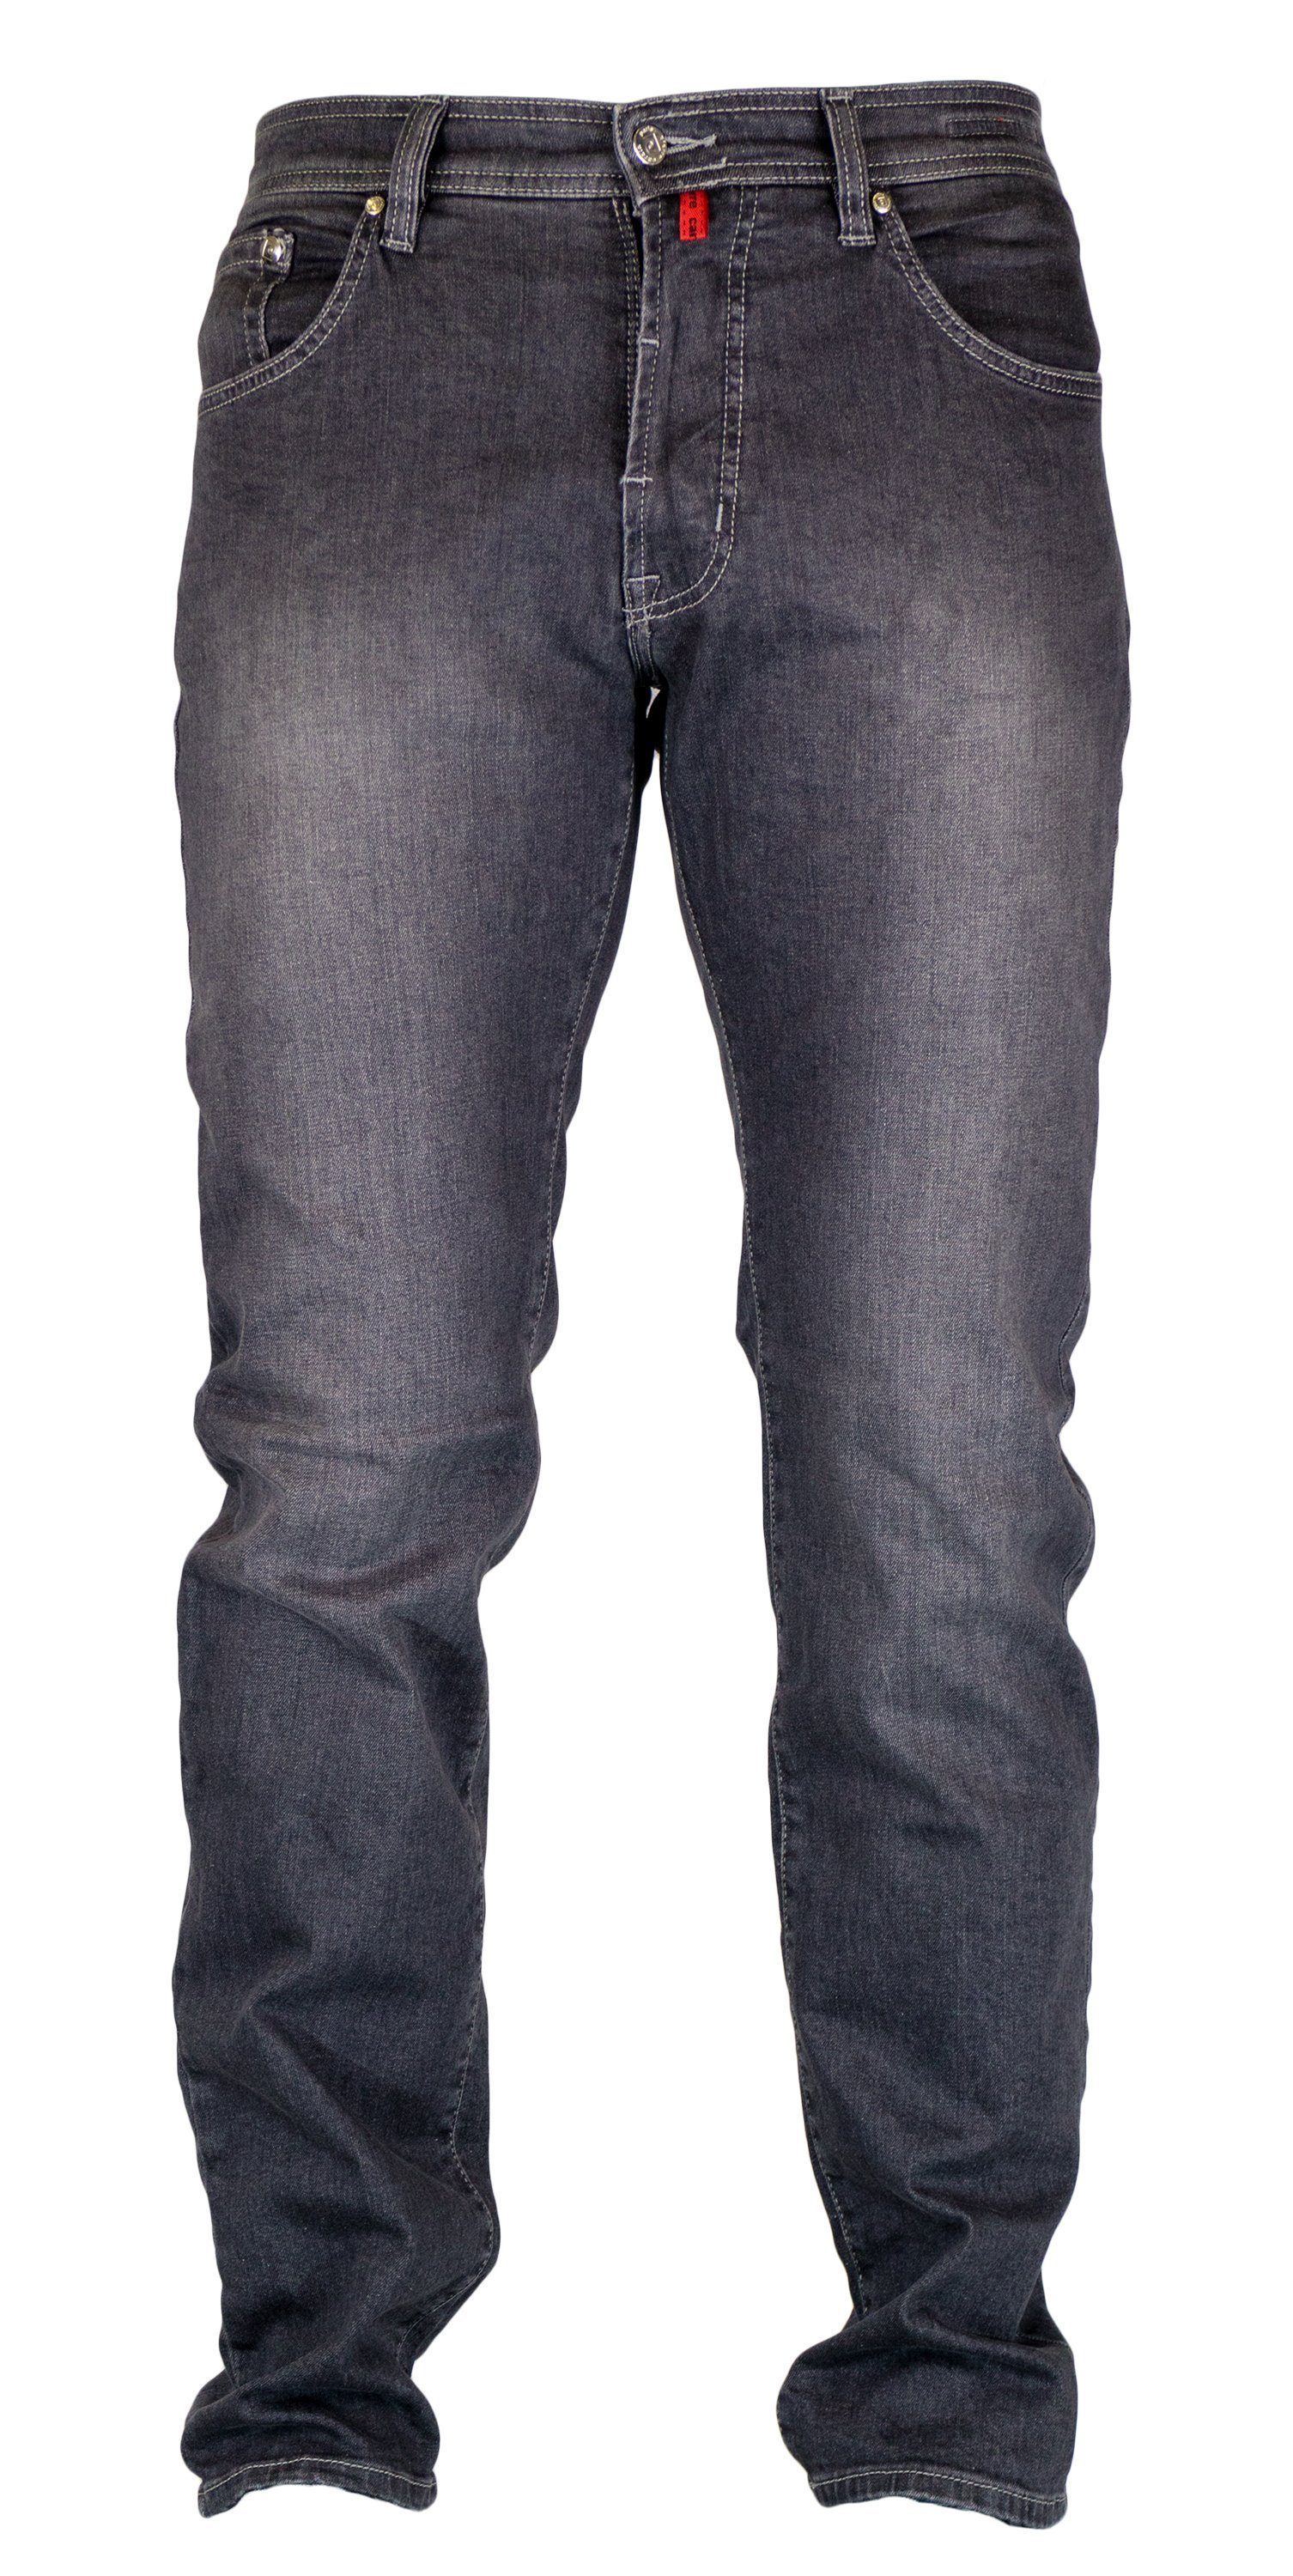 Pierre Cardin 5-Pocket-Jeans PIERRE CARDIN DEAUVILLE mid grey used 31961  7350.92 - DENIM EDITION